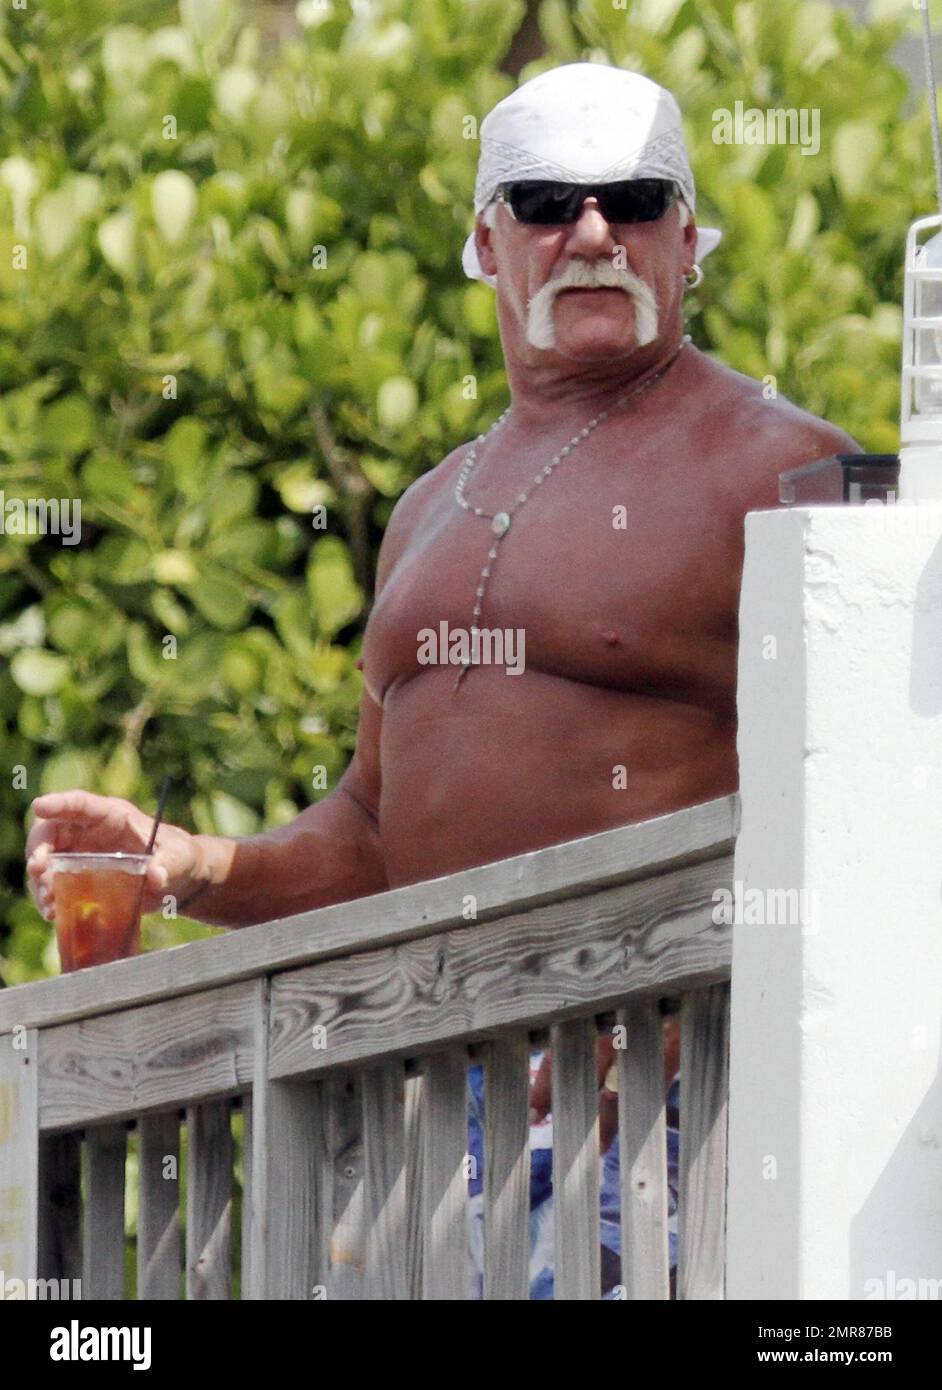 EXCLUSIVO! Hulk Hogan pasa el día junto a la piscina con su hija Brooke y su novia Jennifer McDaniel Foto porno